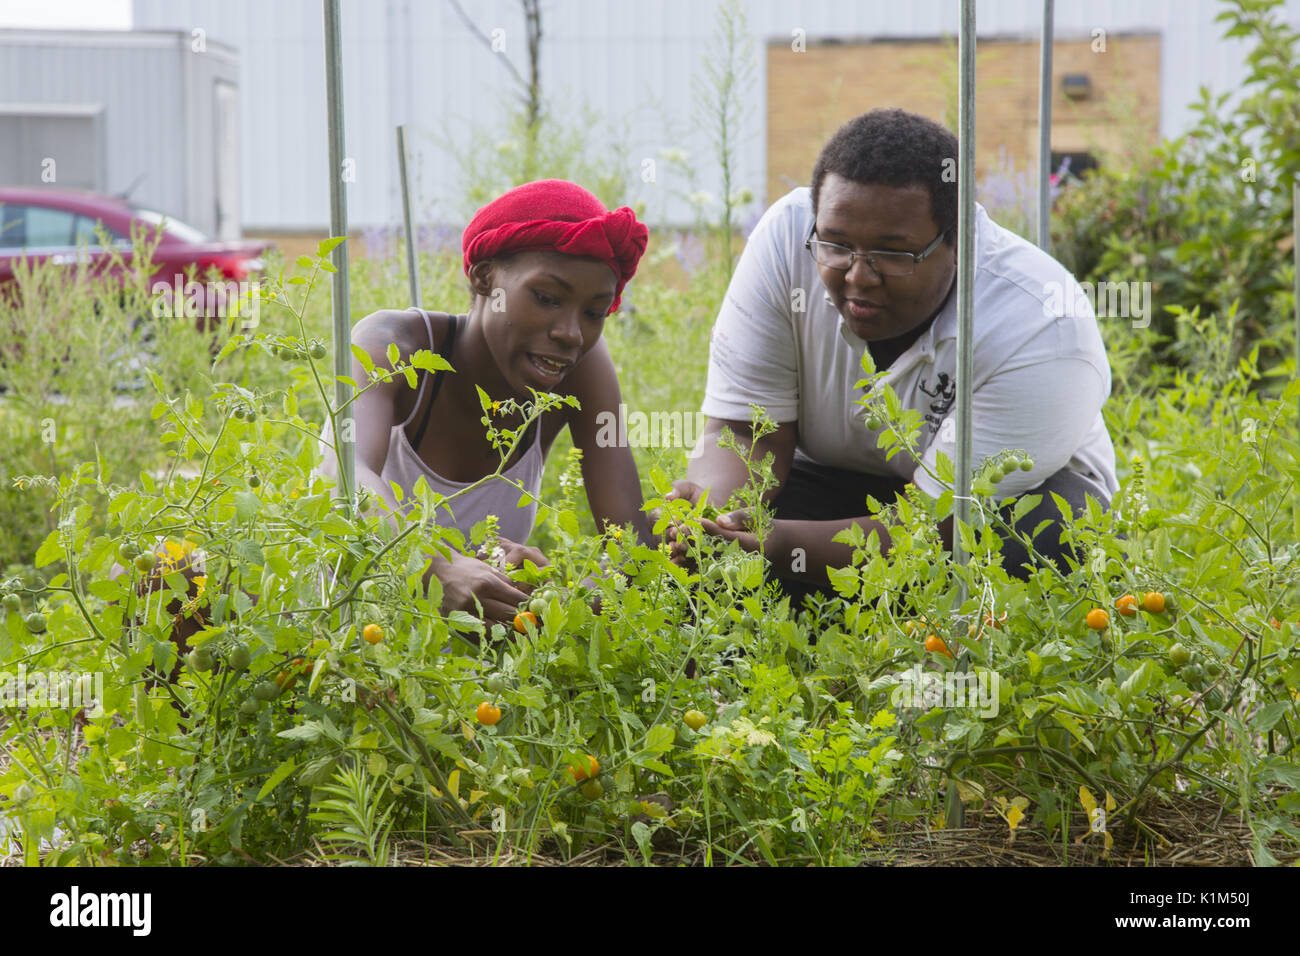 Studenten der Detroit Community School in eine motivationale Sommer teilnehmen, Arbeitsprogramm, in dem sie leben, Arbeit und unternehmerische Fähigkeiten in einem unternehmerischen Inkubator Typ Umgebung zu lernen. Studenten in den Gartenbau Programm. Stockfoto